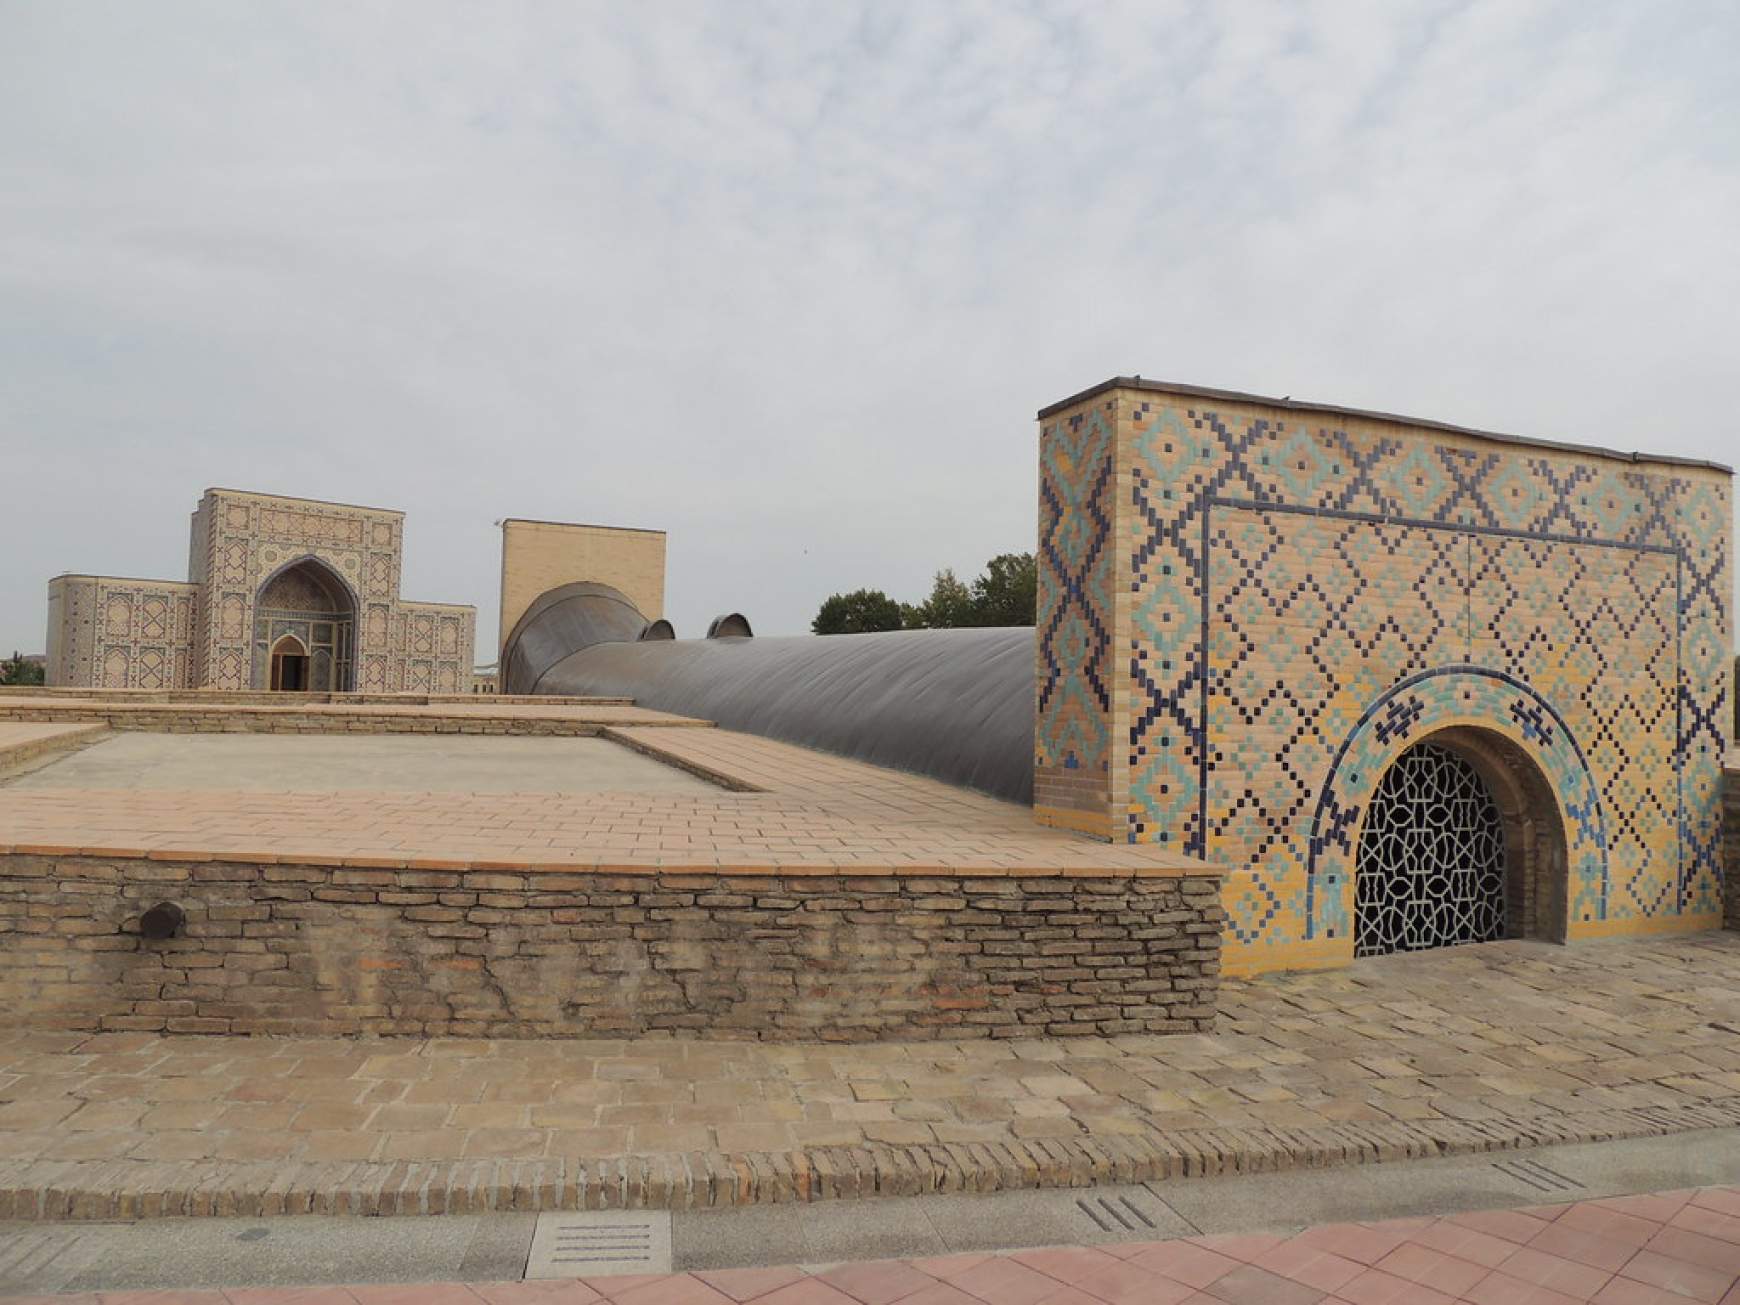 Az obszervatórium ma Szamarkand egyik látványossága